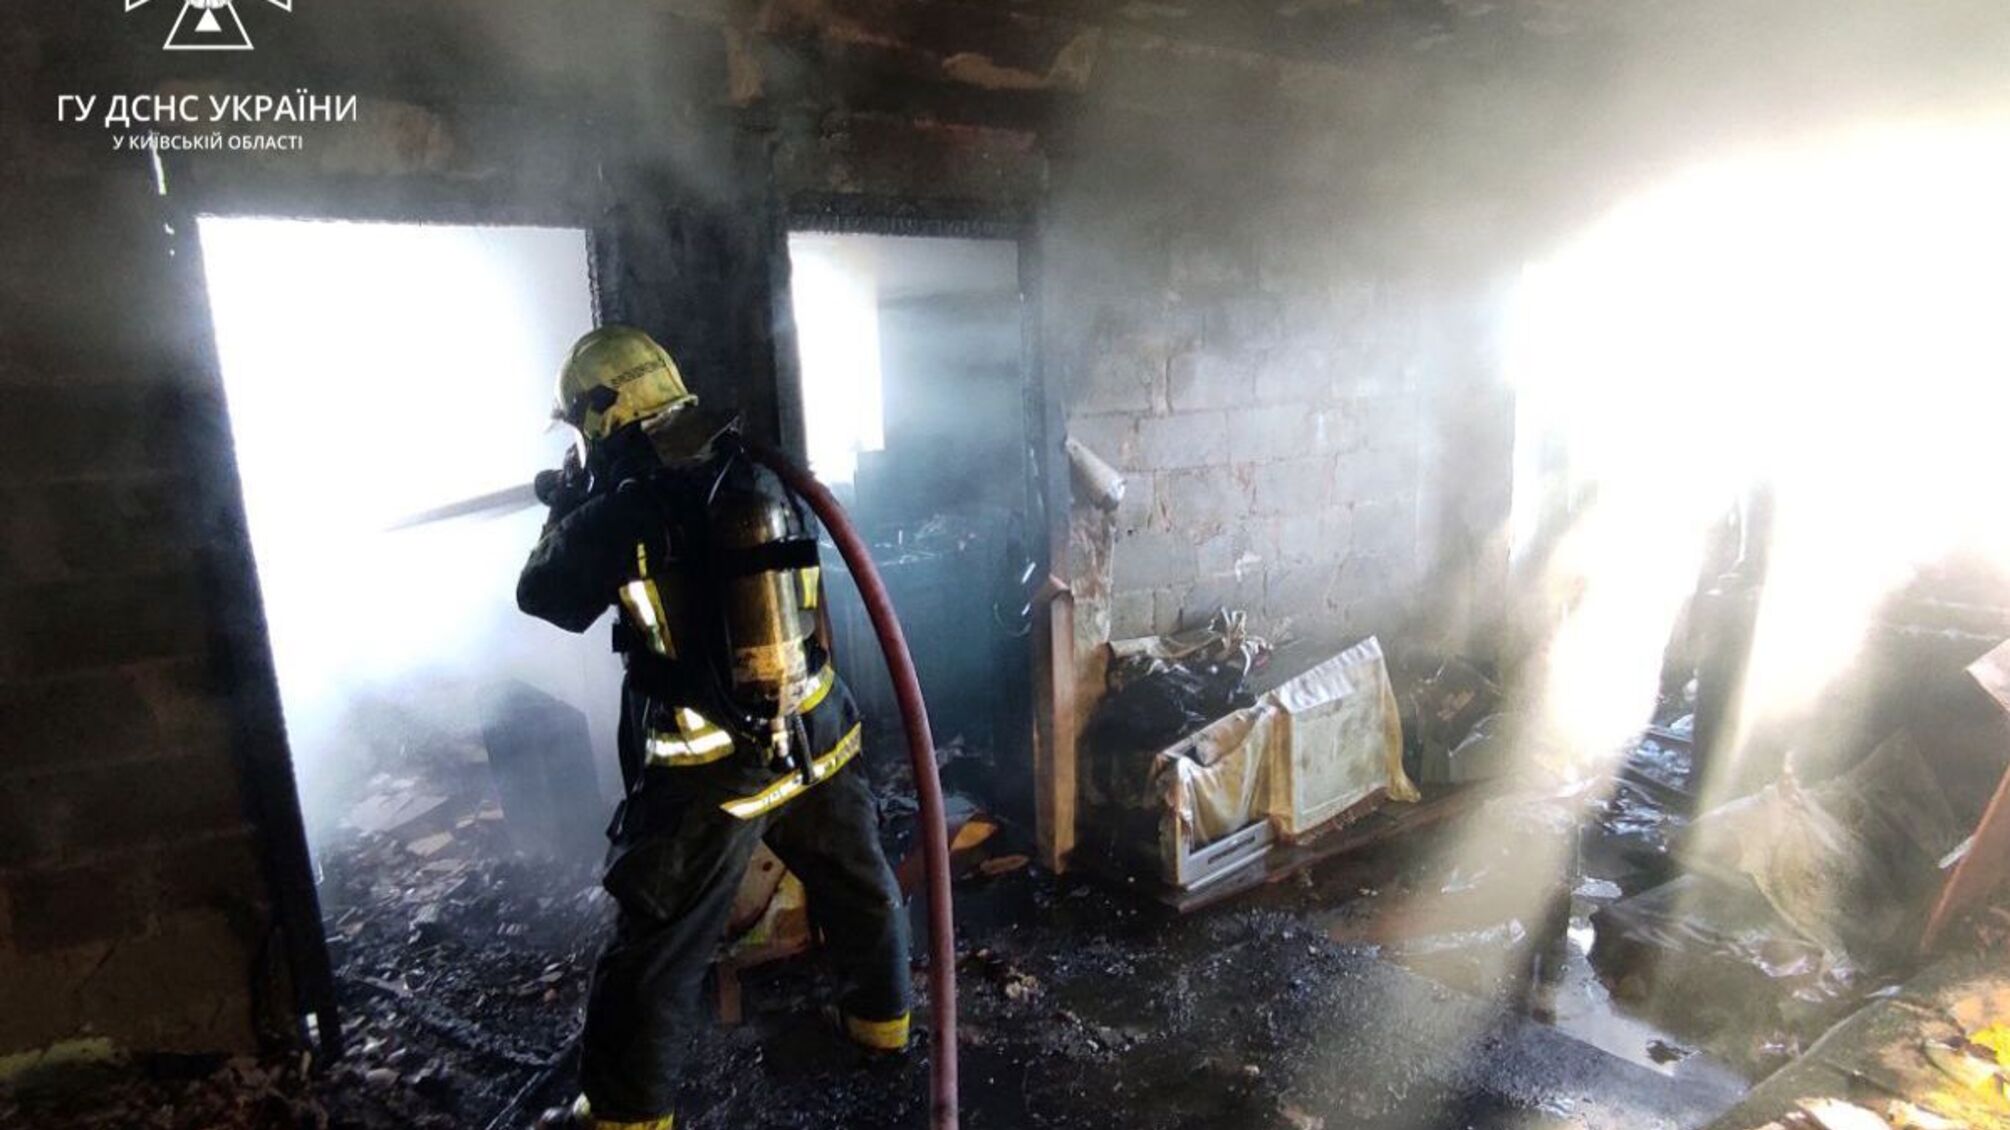 Под Киевом произошел пожар: спасатели успели вытащить из огня мужчину 